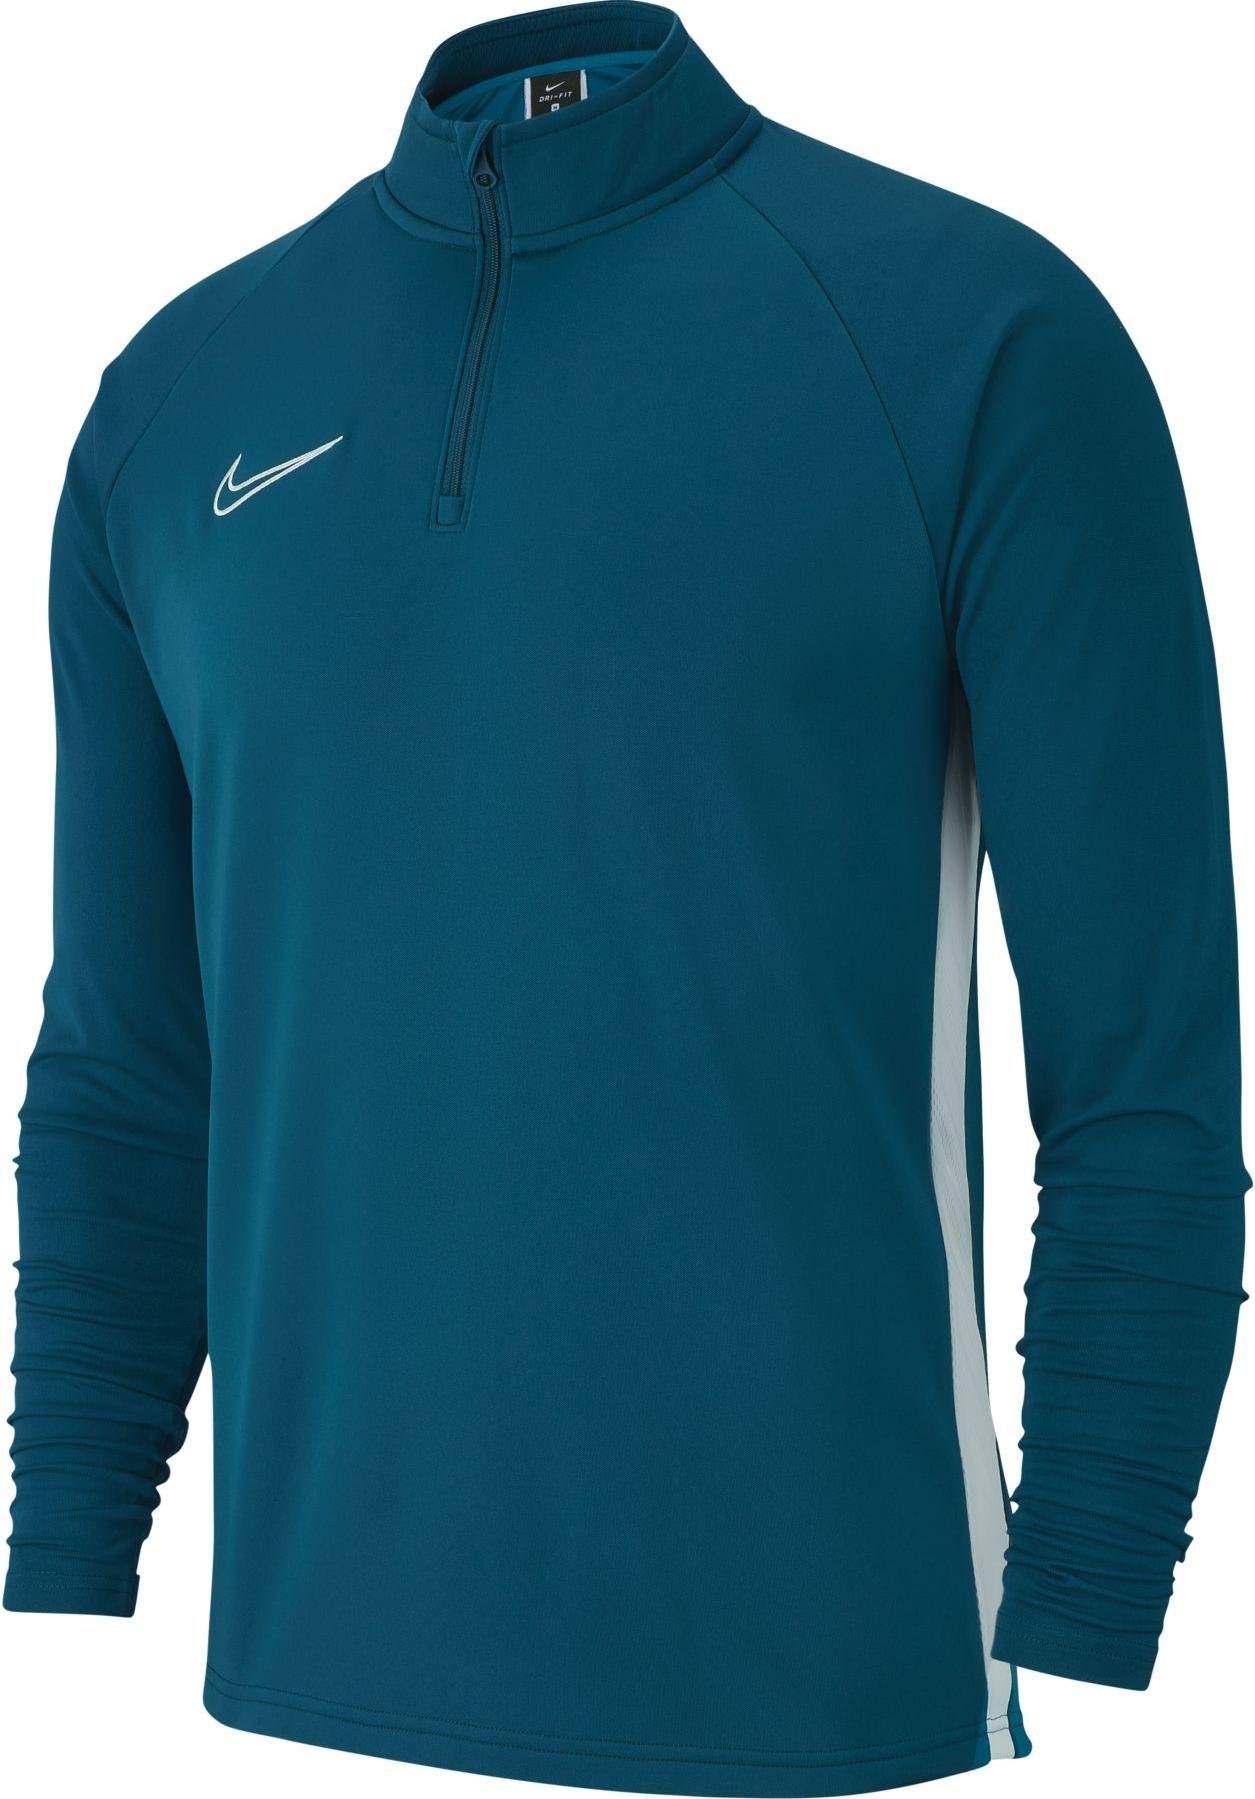 Pánské tréninkové tričko s dlouhým rukávem a čtvrtinovým zipem Nike Dri-FIT Academy 19